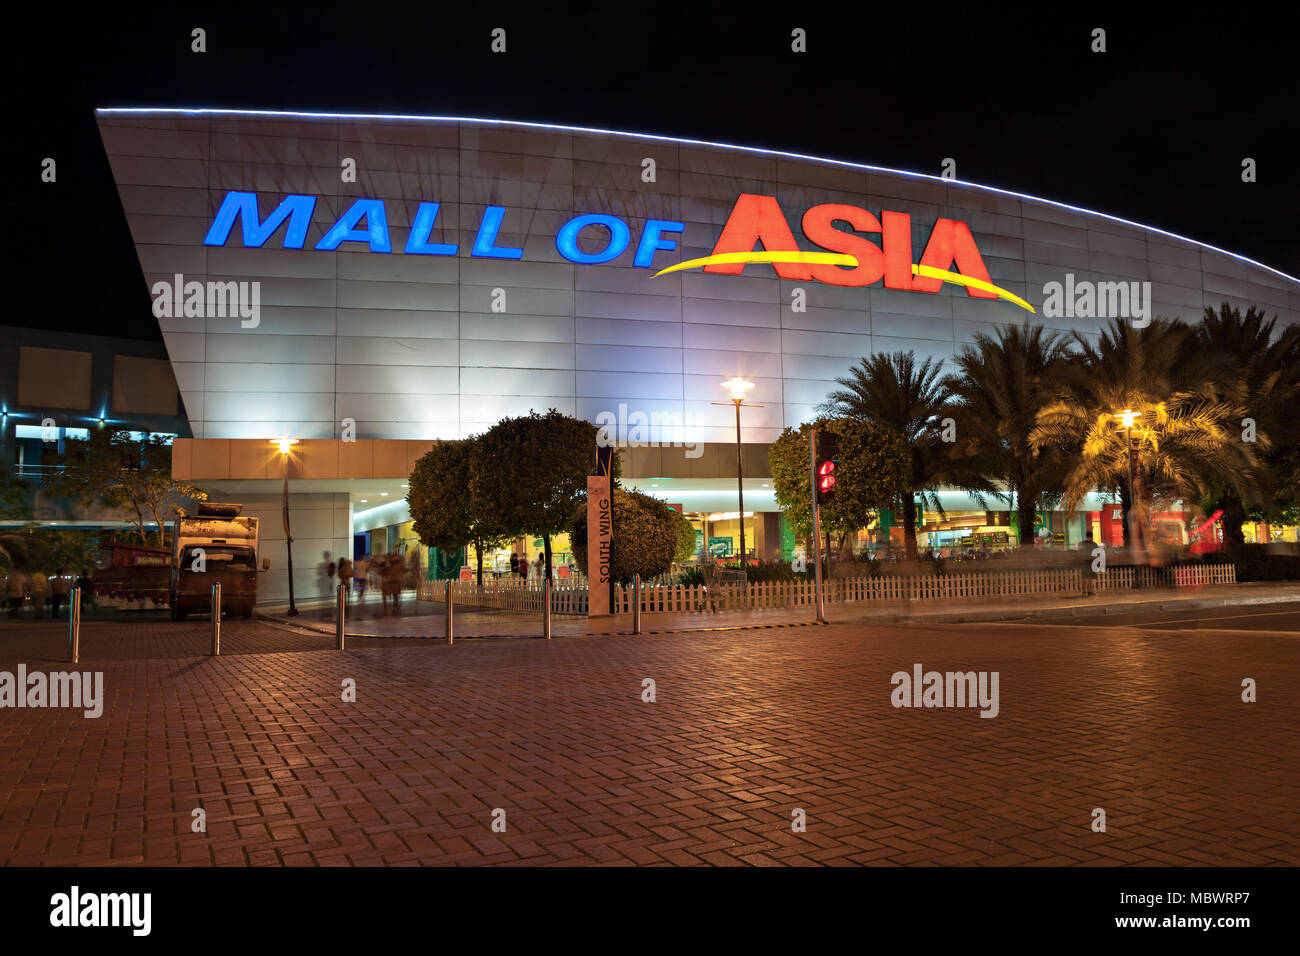 MANILA, Filippine - 23 febbraio: SM Mall of Asia (MOA) è la seconda più grande mall nelle Filippine il 23 febbraio 2013 a Manila nelle Filippine. Esso ha Foto Stock